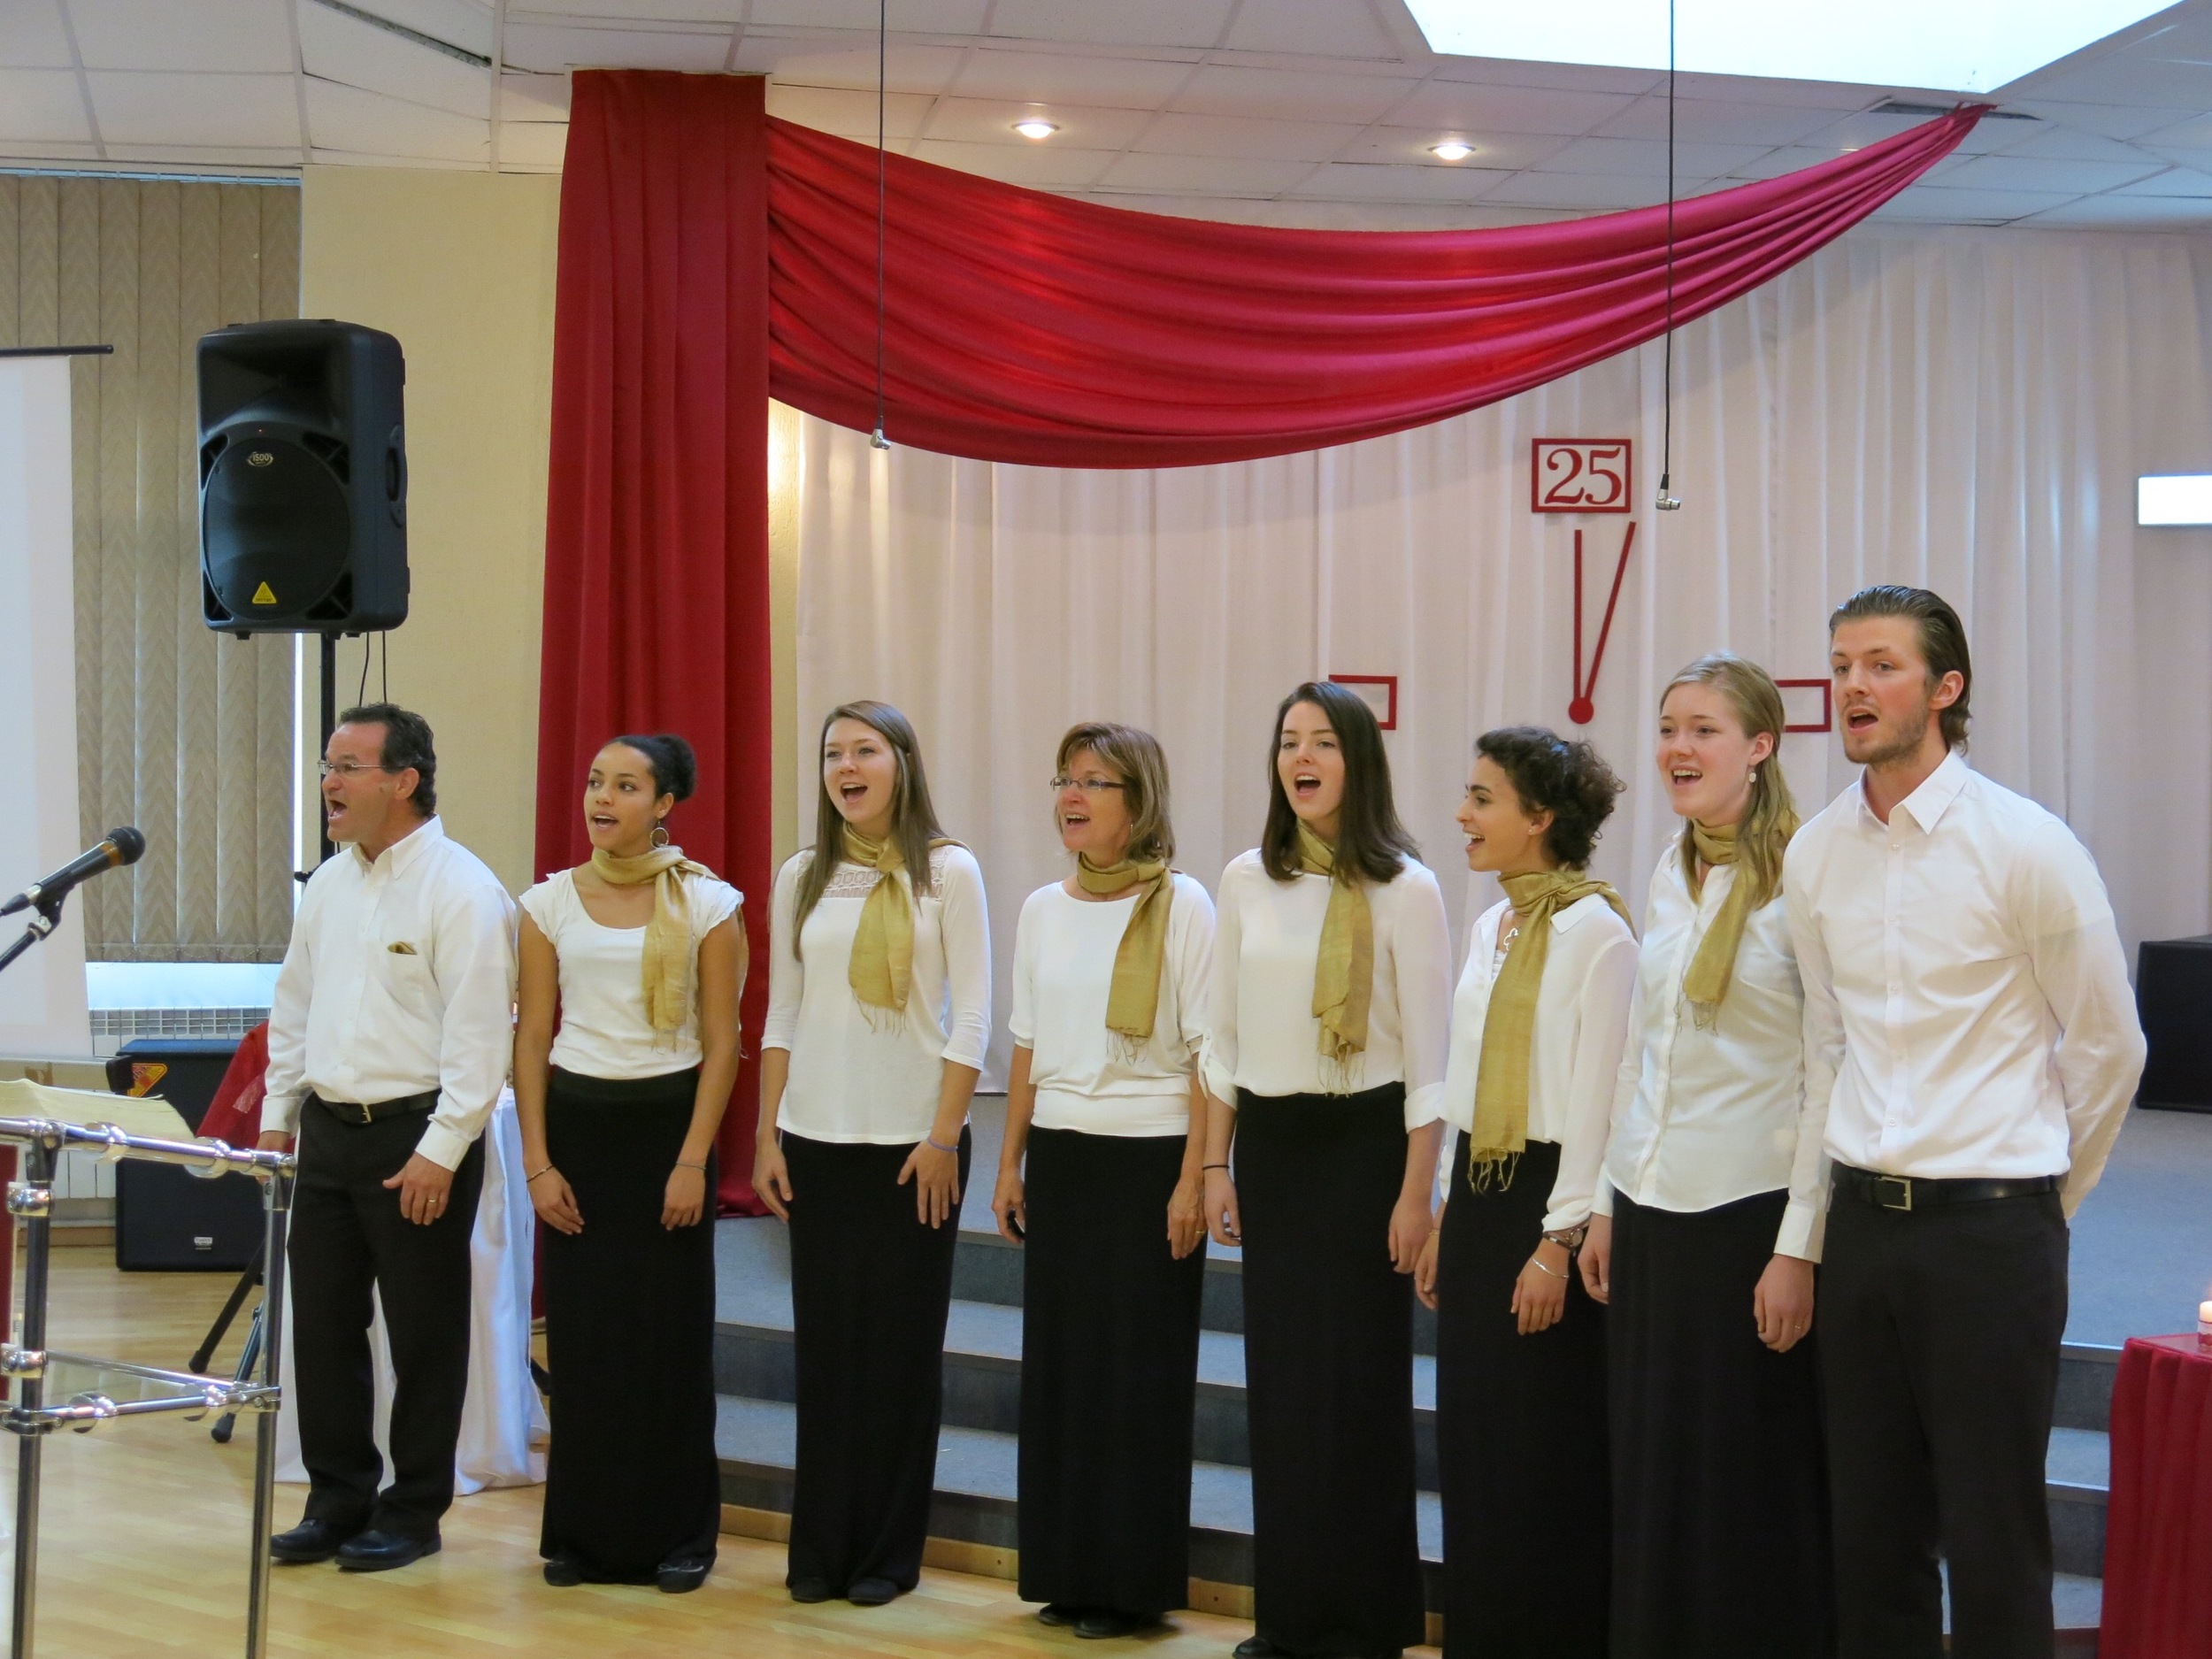  Concert à l’Université chrétienne de Saint Pétersbourg, Russie  Chorale Harmonie  